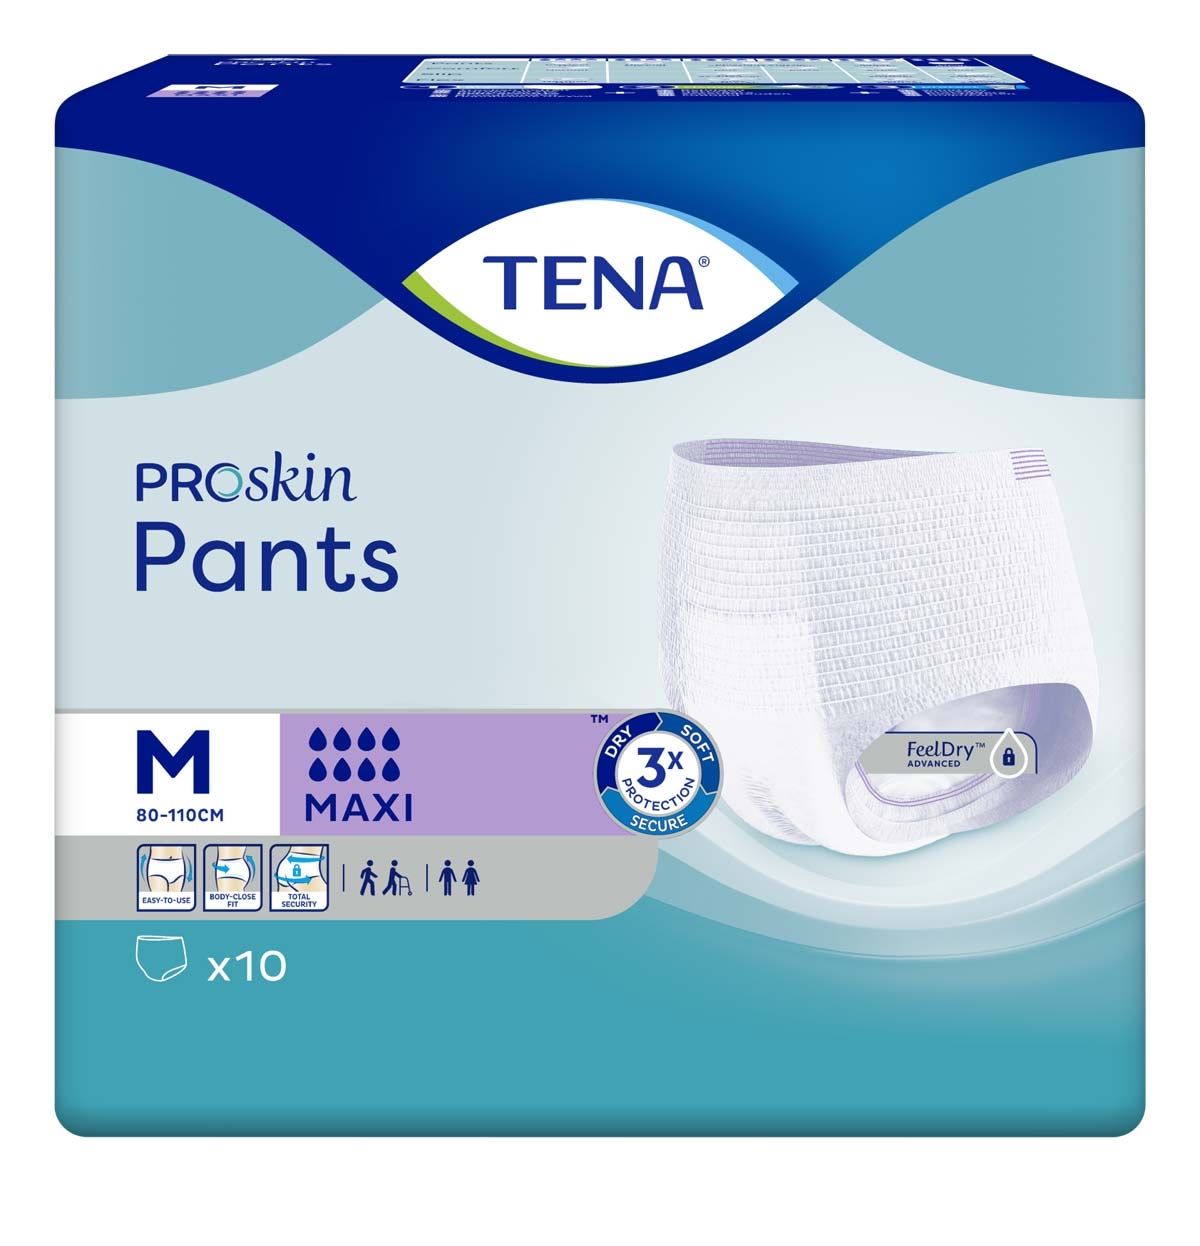 TENA Pants MAXI - extra saugstark - Medium (M) - 4x10 Stück